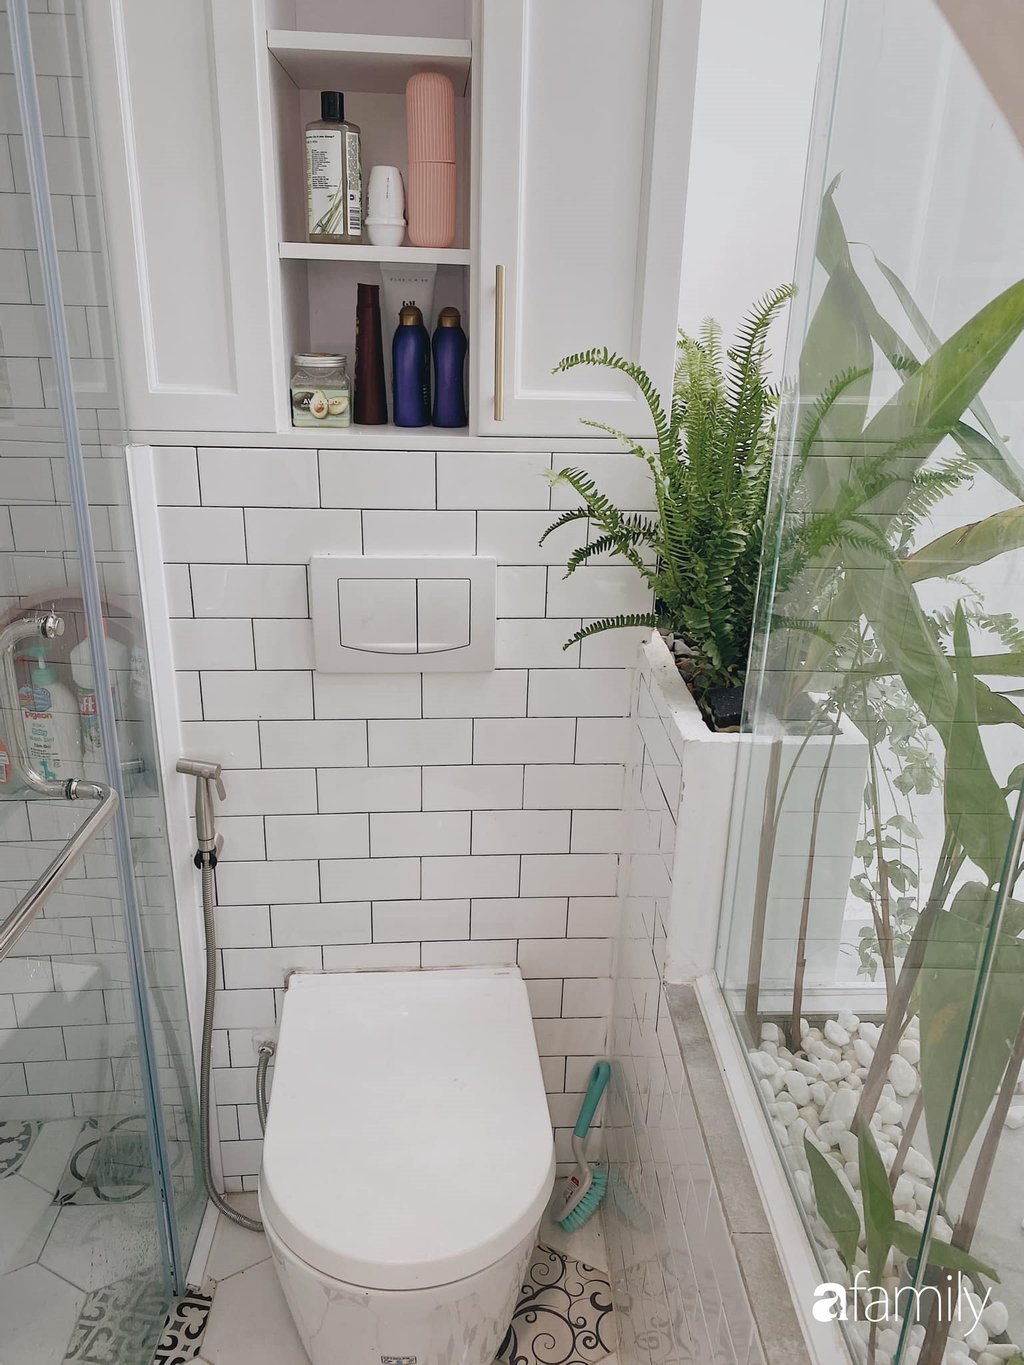 Khu vực phòng tắm đẹp ấn tượng với cách decor như một resort thu nhỏ.